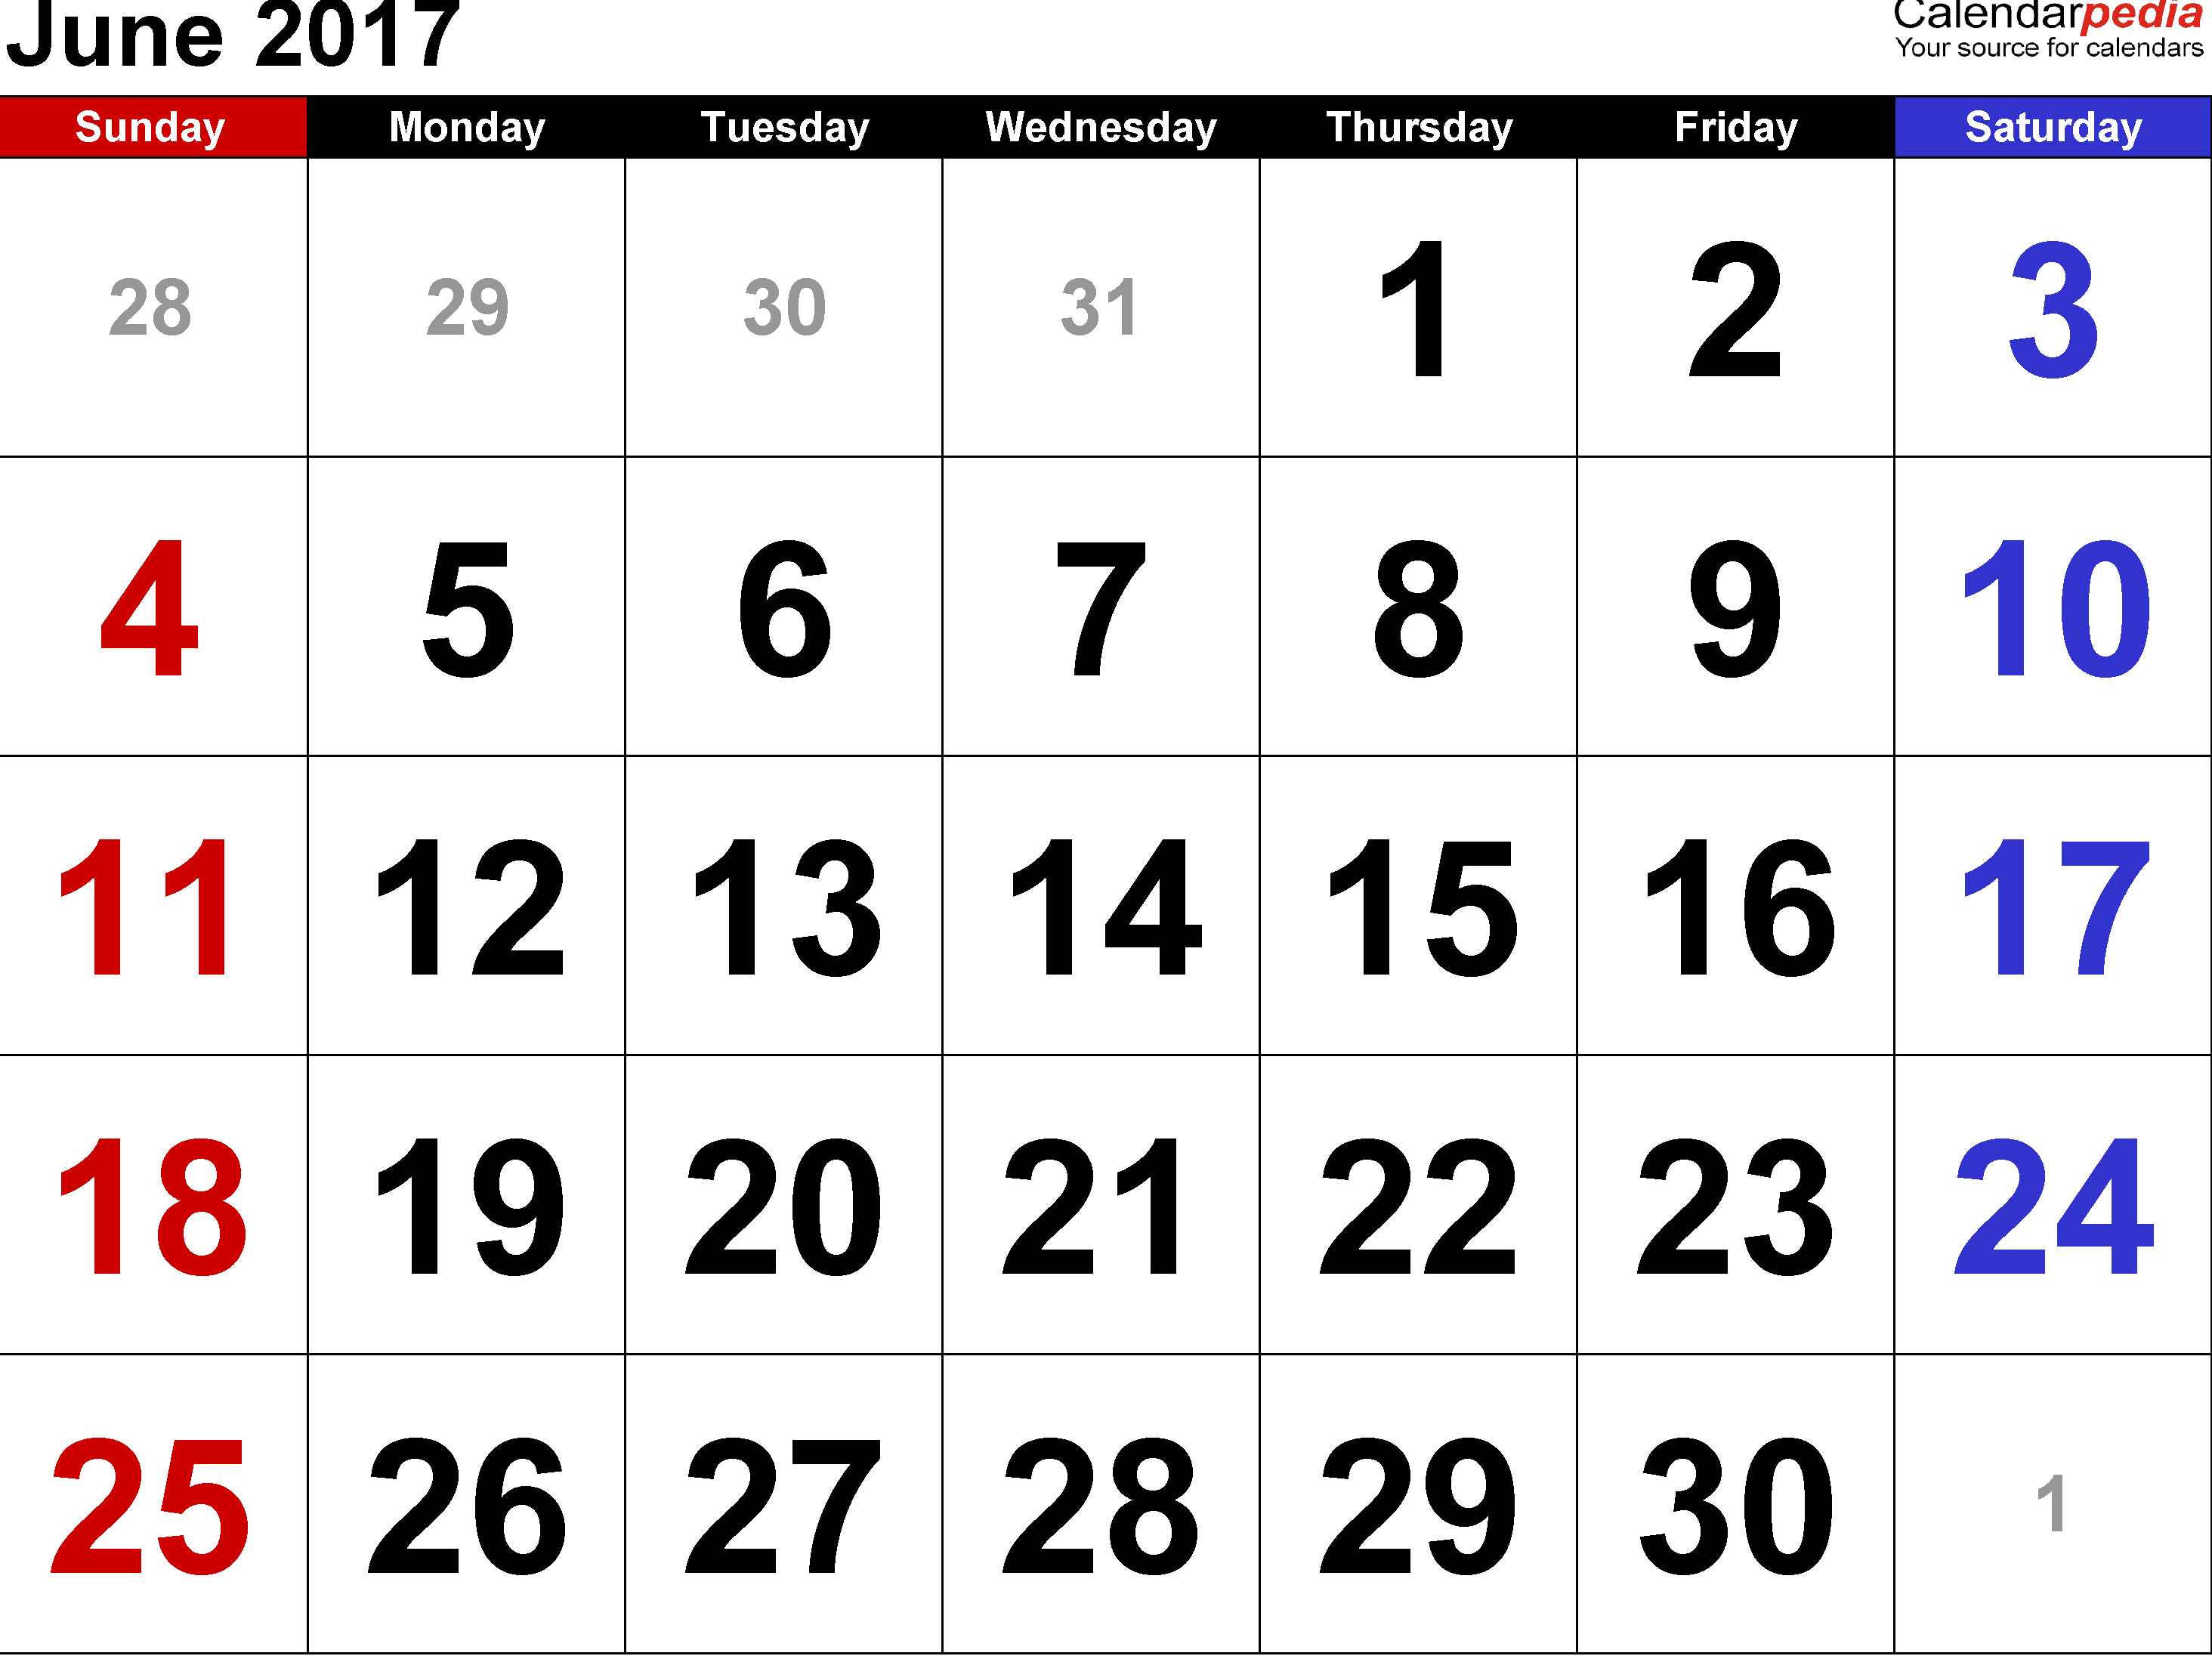 June 2017 Calendar Chart with Indian Festivals